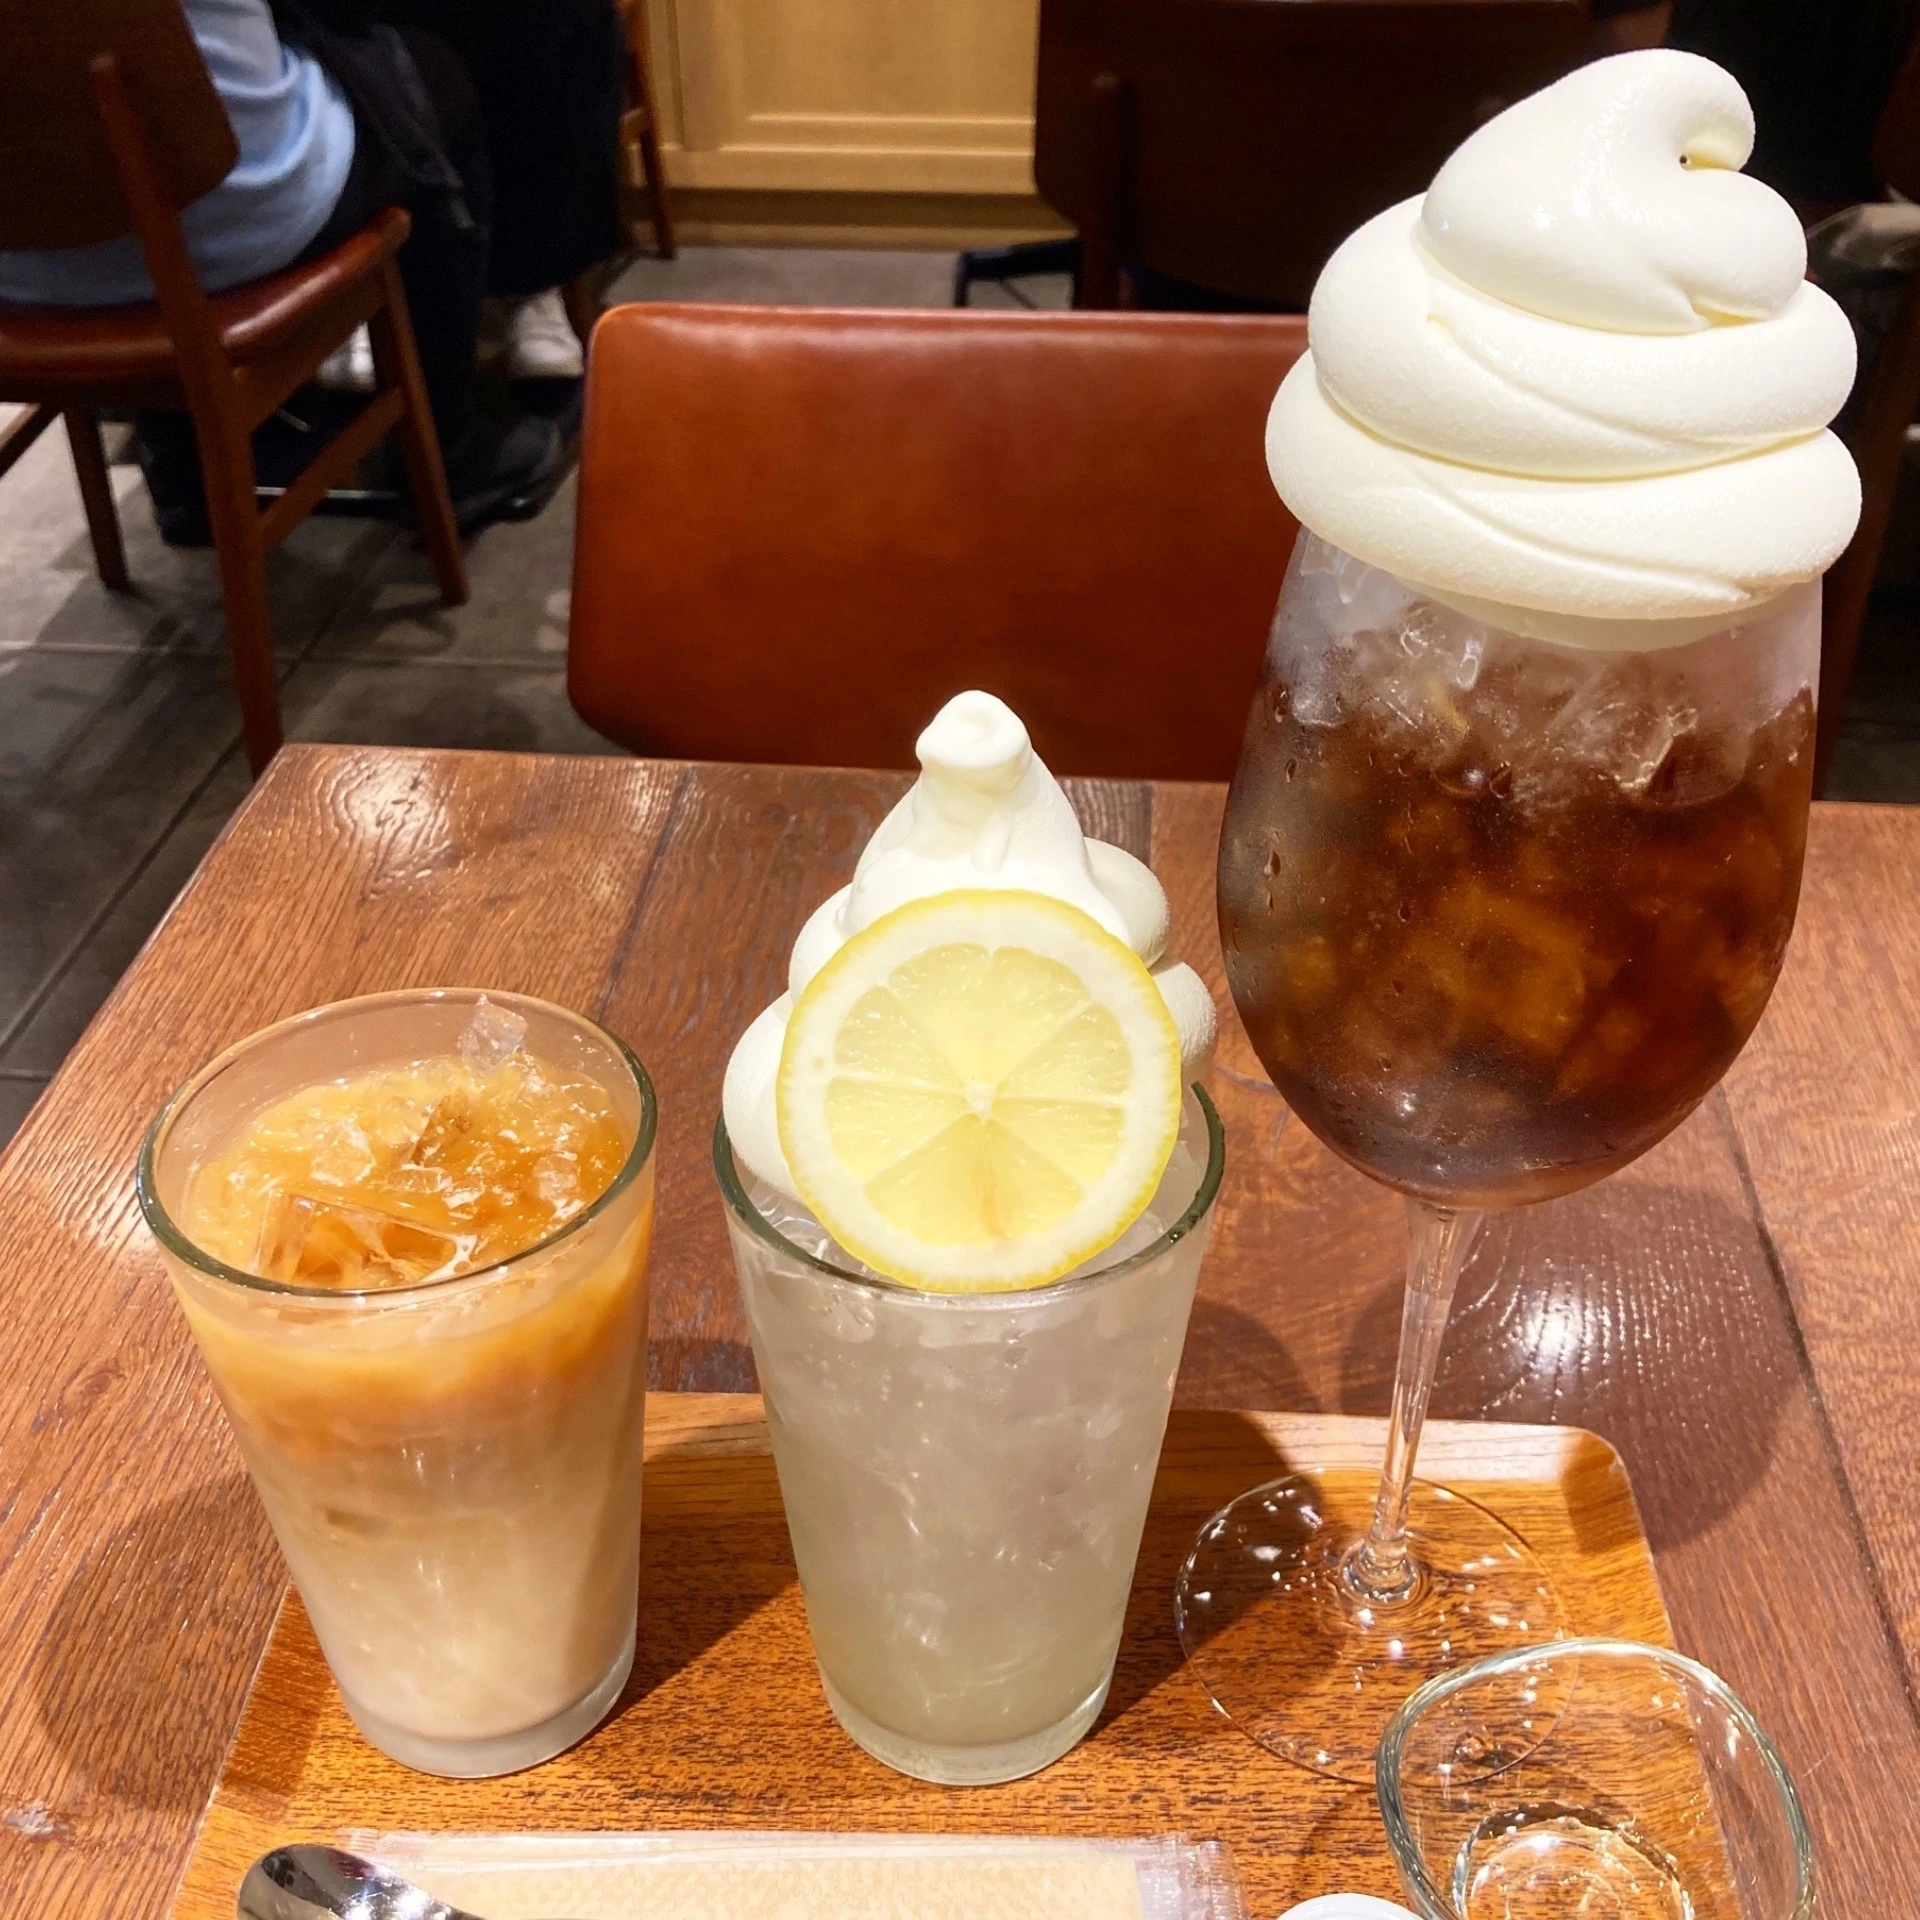 カフェオレ(アイス)、銀河堂ソフトのクリームソーダ(レモン)、コーヒーフロート